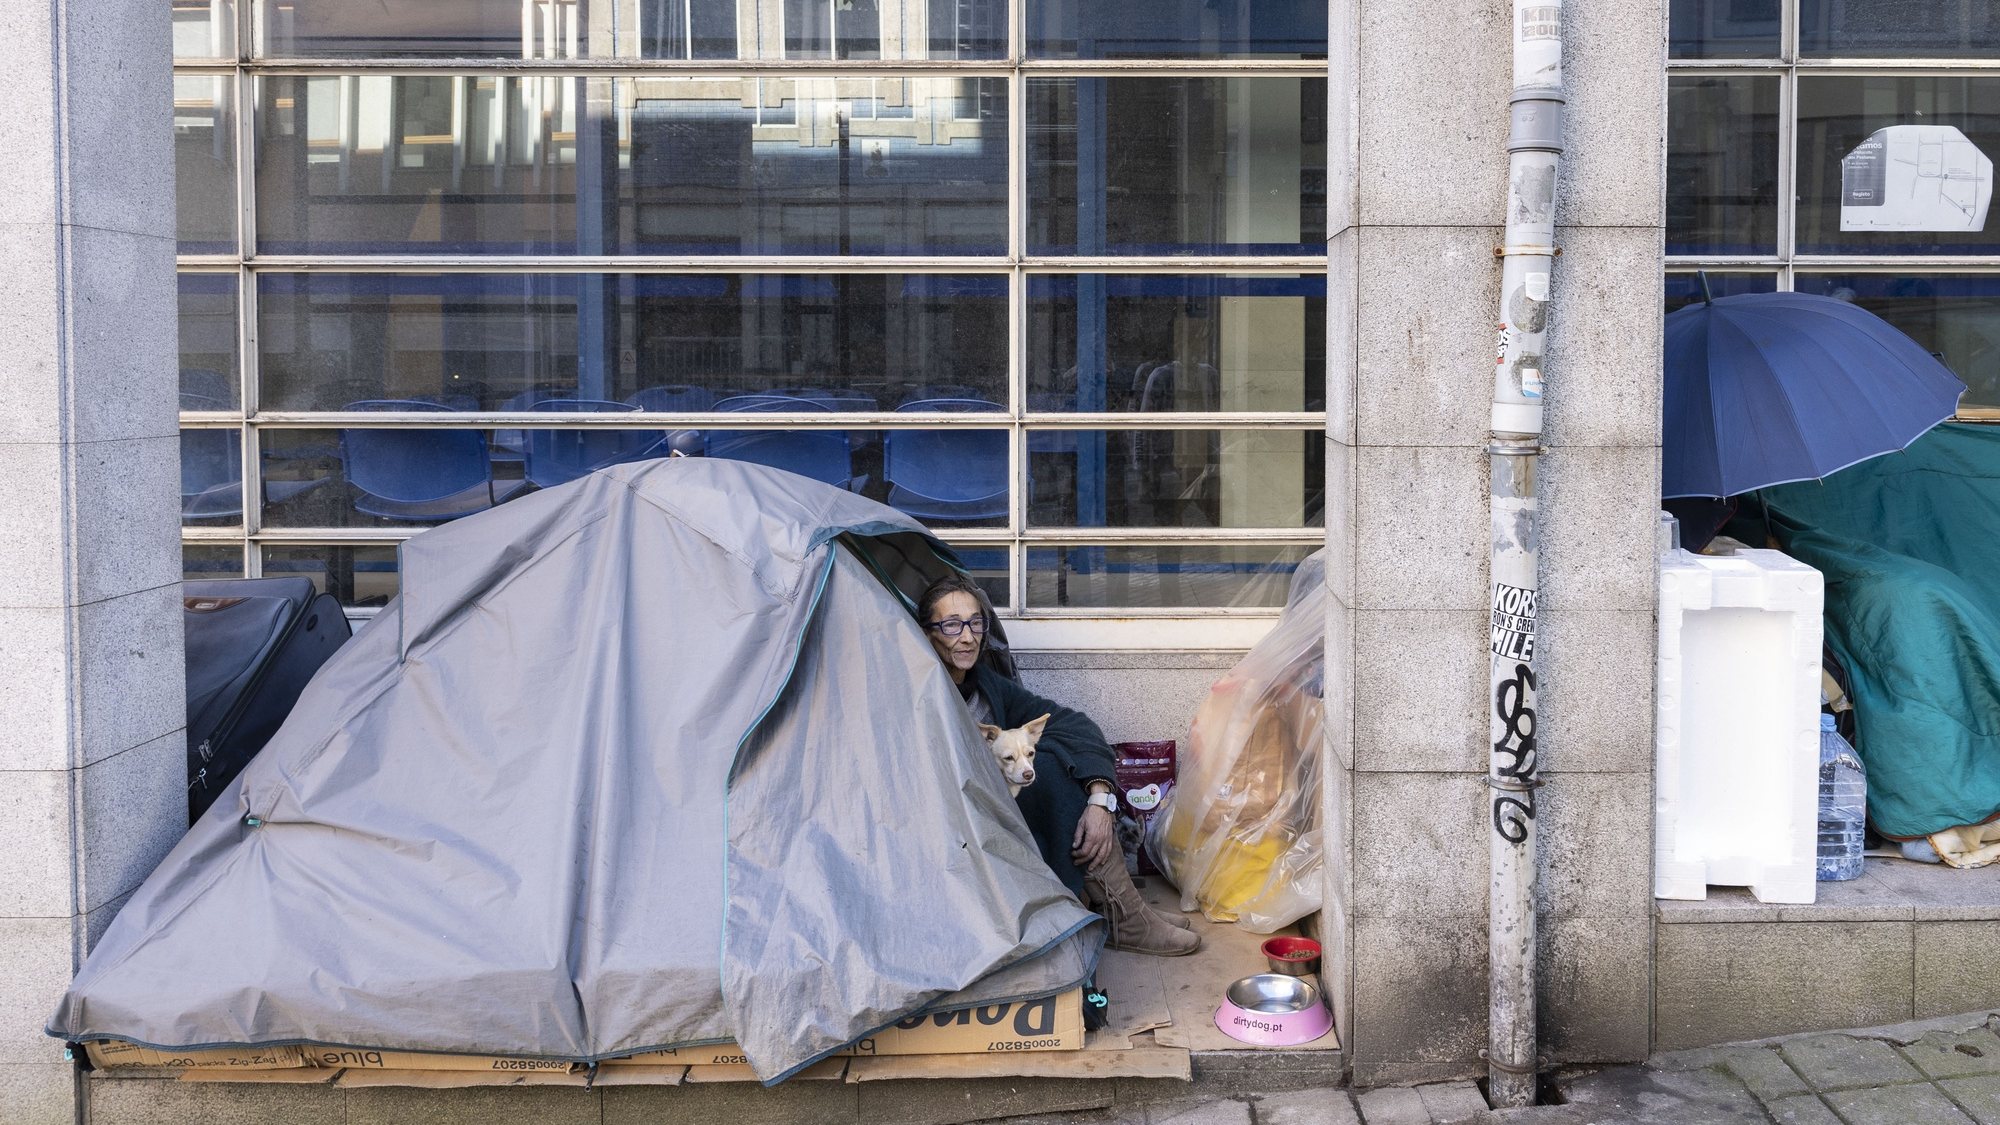 Plano de contingência para sem-abrigo do Porto passa a contar com 4 níveis de alerta